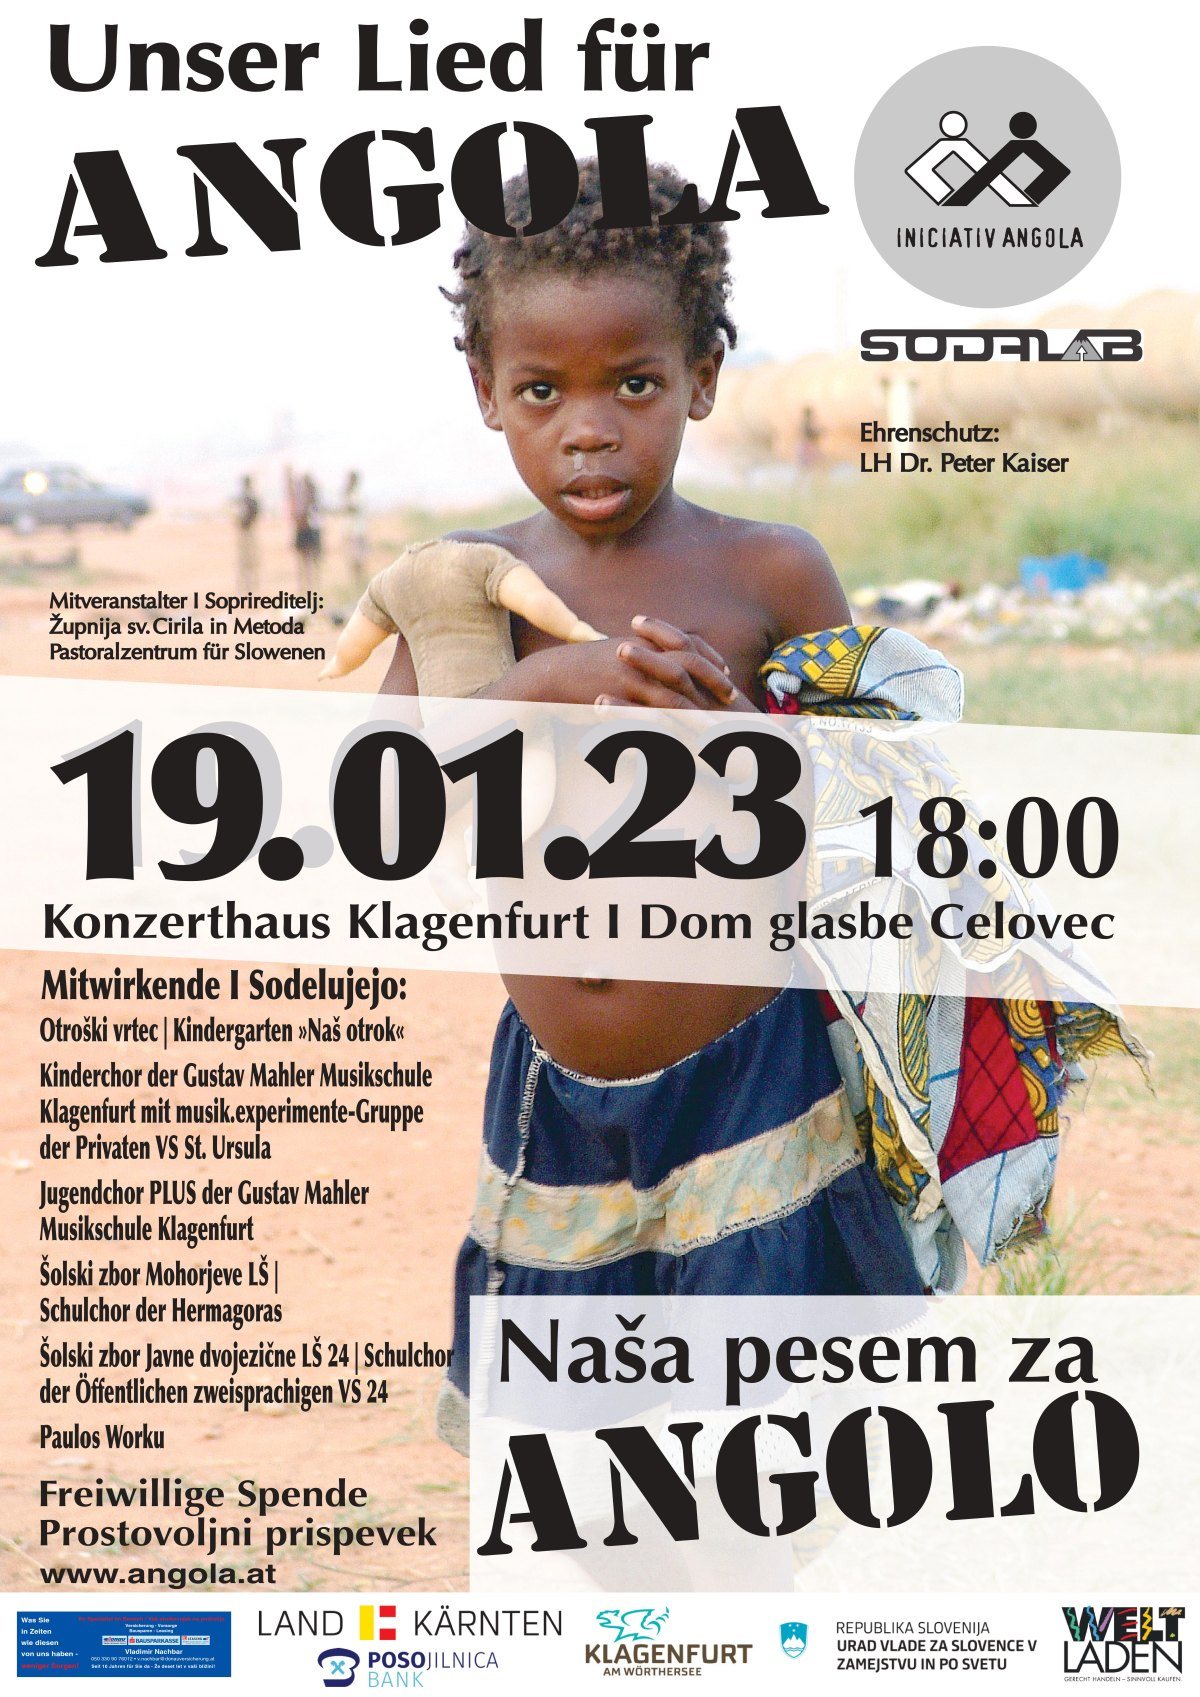 Image: Bild zum Eintrag: Unser Lied für Angola 